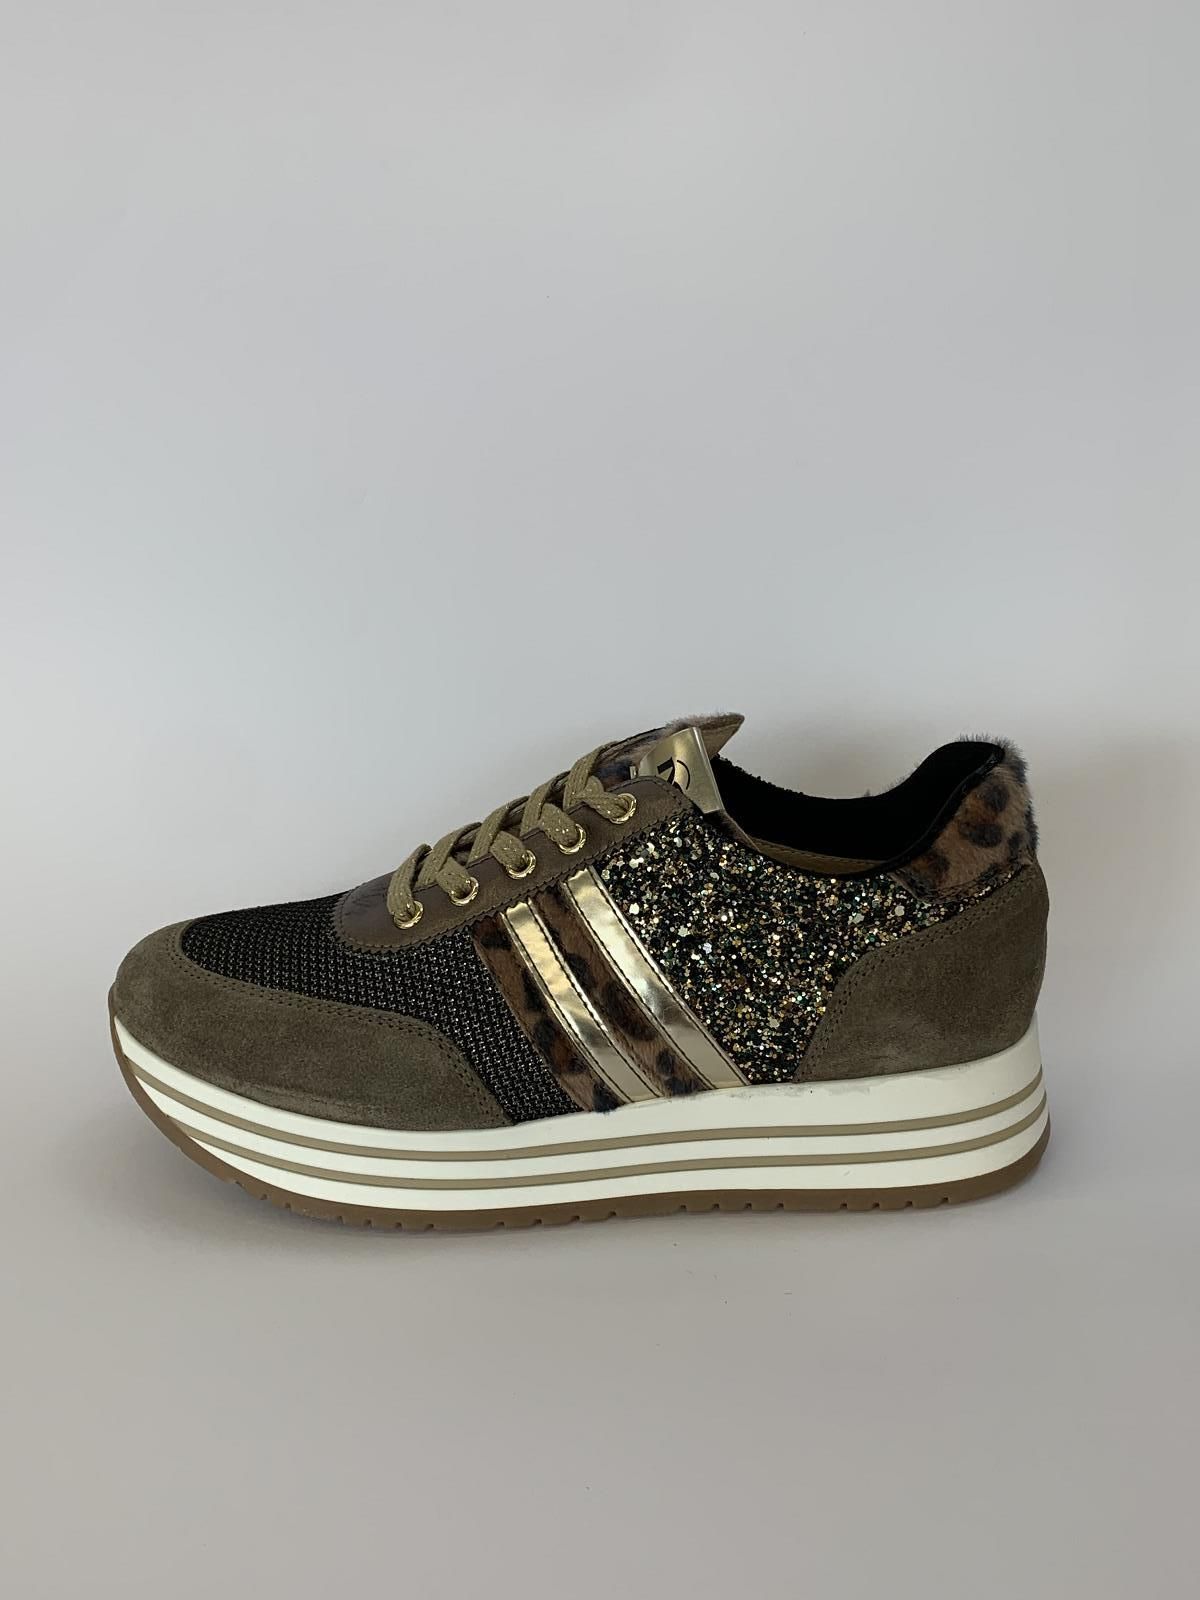 Nero Giardini Sneaker Taupe meisjes (Runner Rits Leopard - 31672) - Schoenen Luca